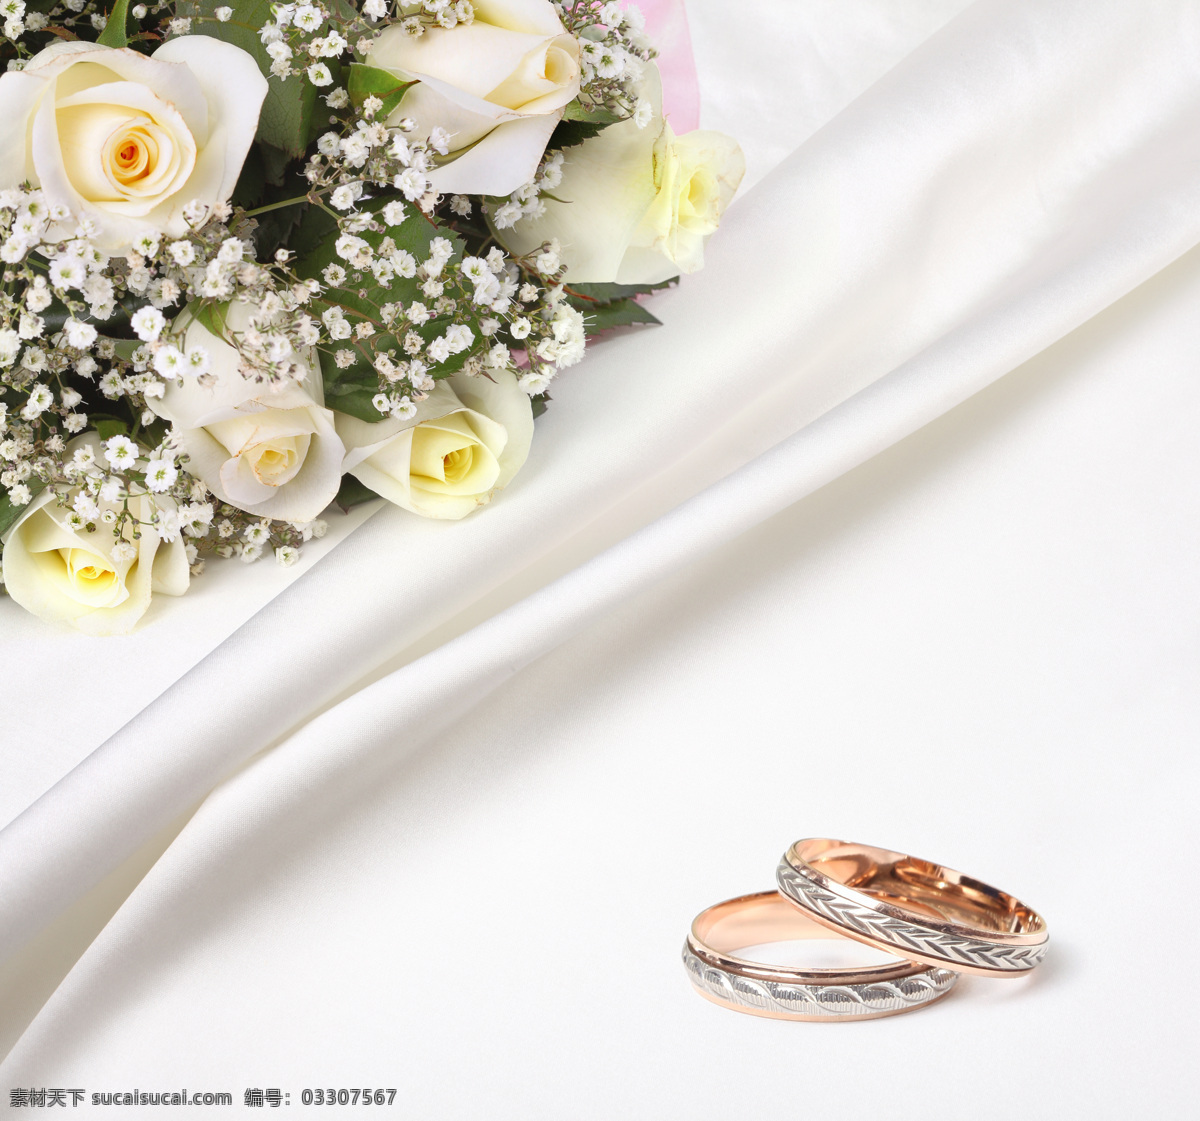 结婚 戒 玫瑰 玫瑰花 鲜花 婚庆 结婚戒指 对戒 黄金戒指 丝绸背景 其他类别 生活百科 白色